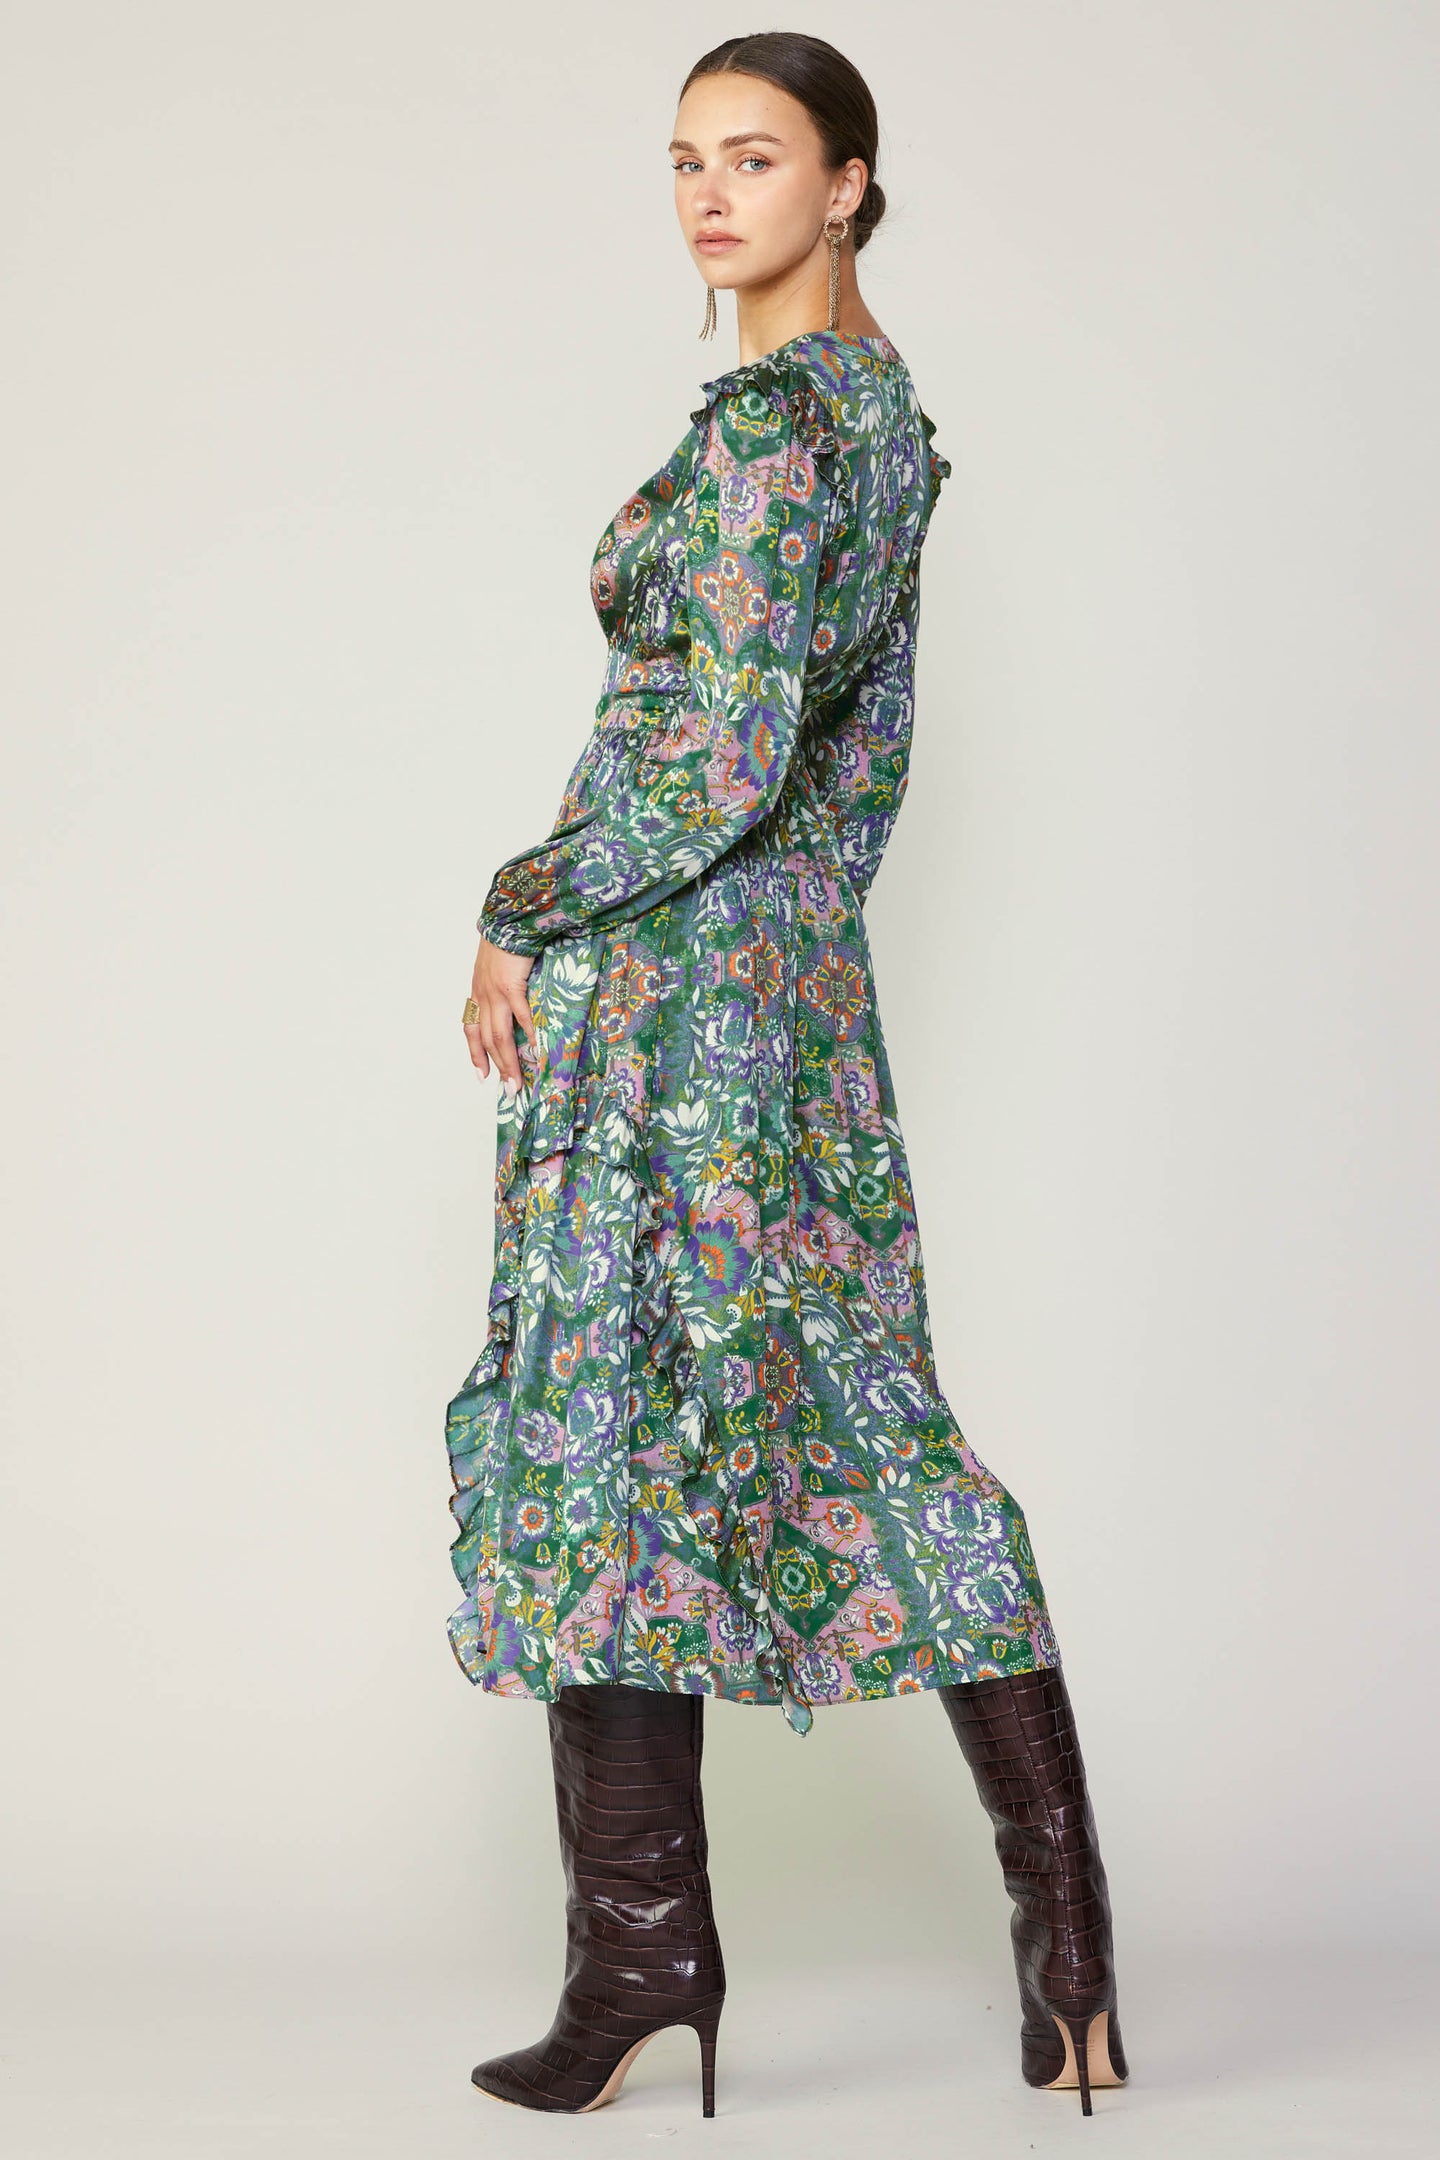 Emmaline Floral Midi Dress – CURRENT AIR